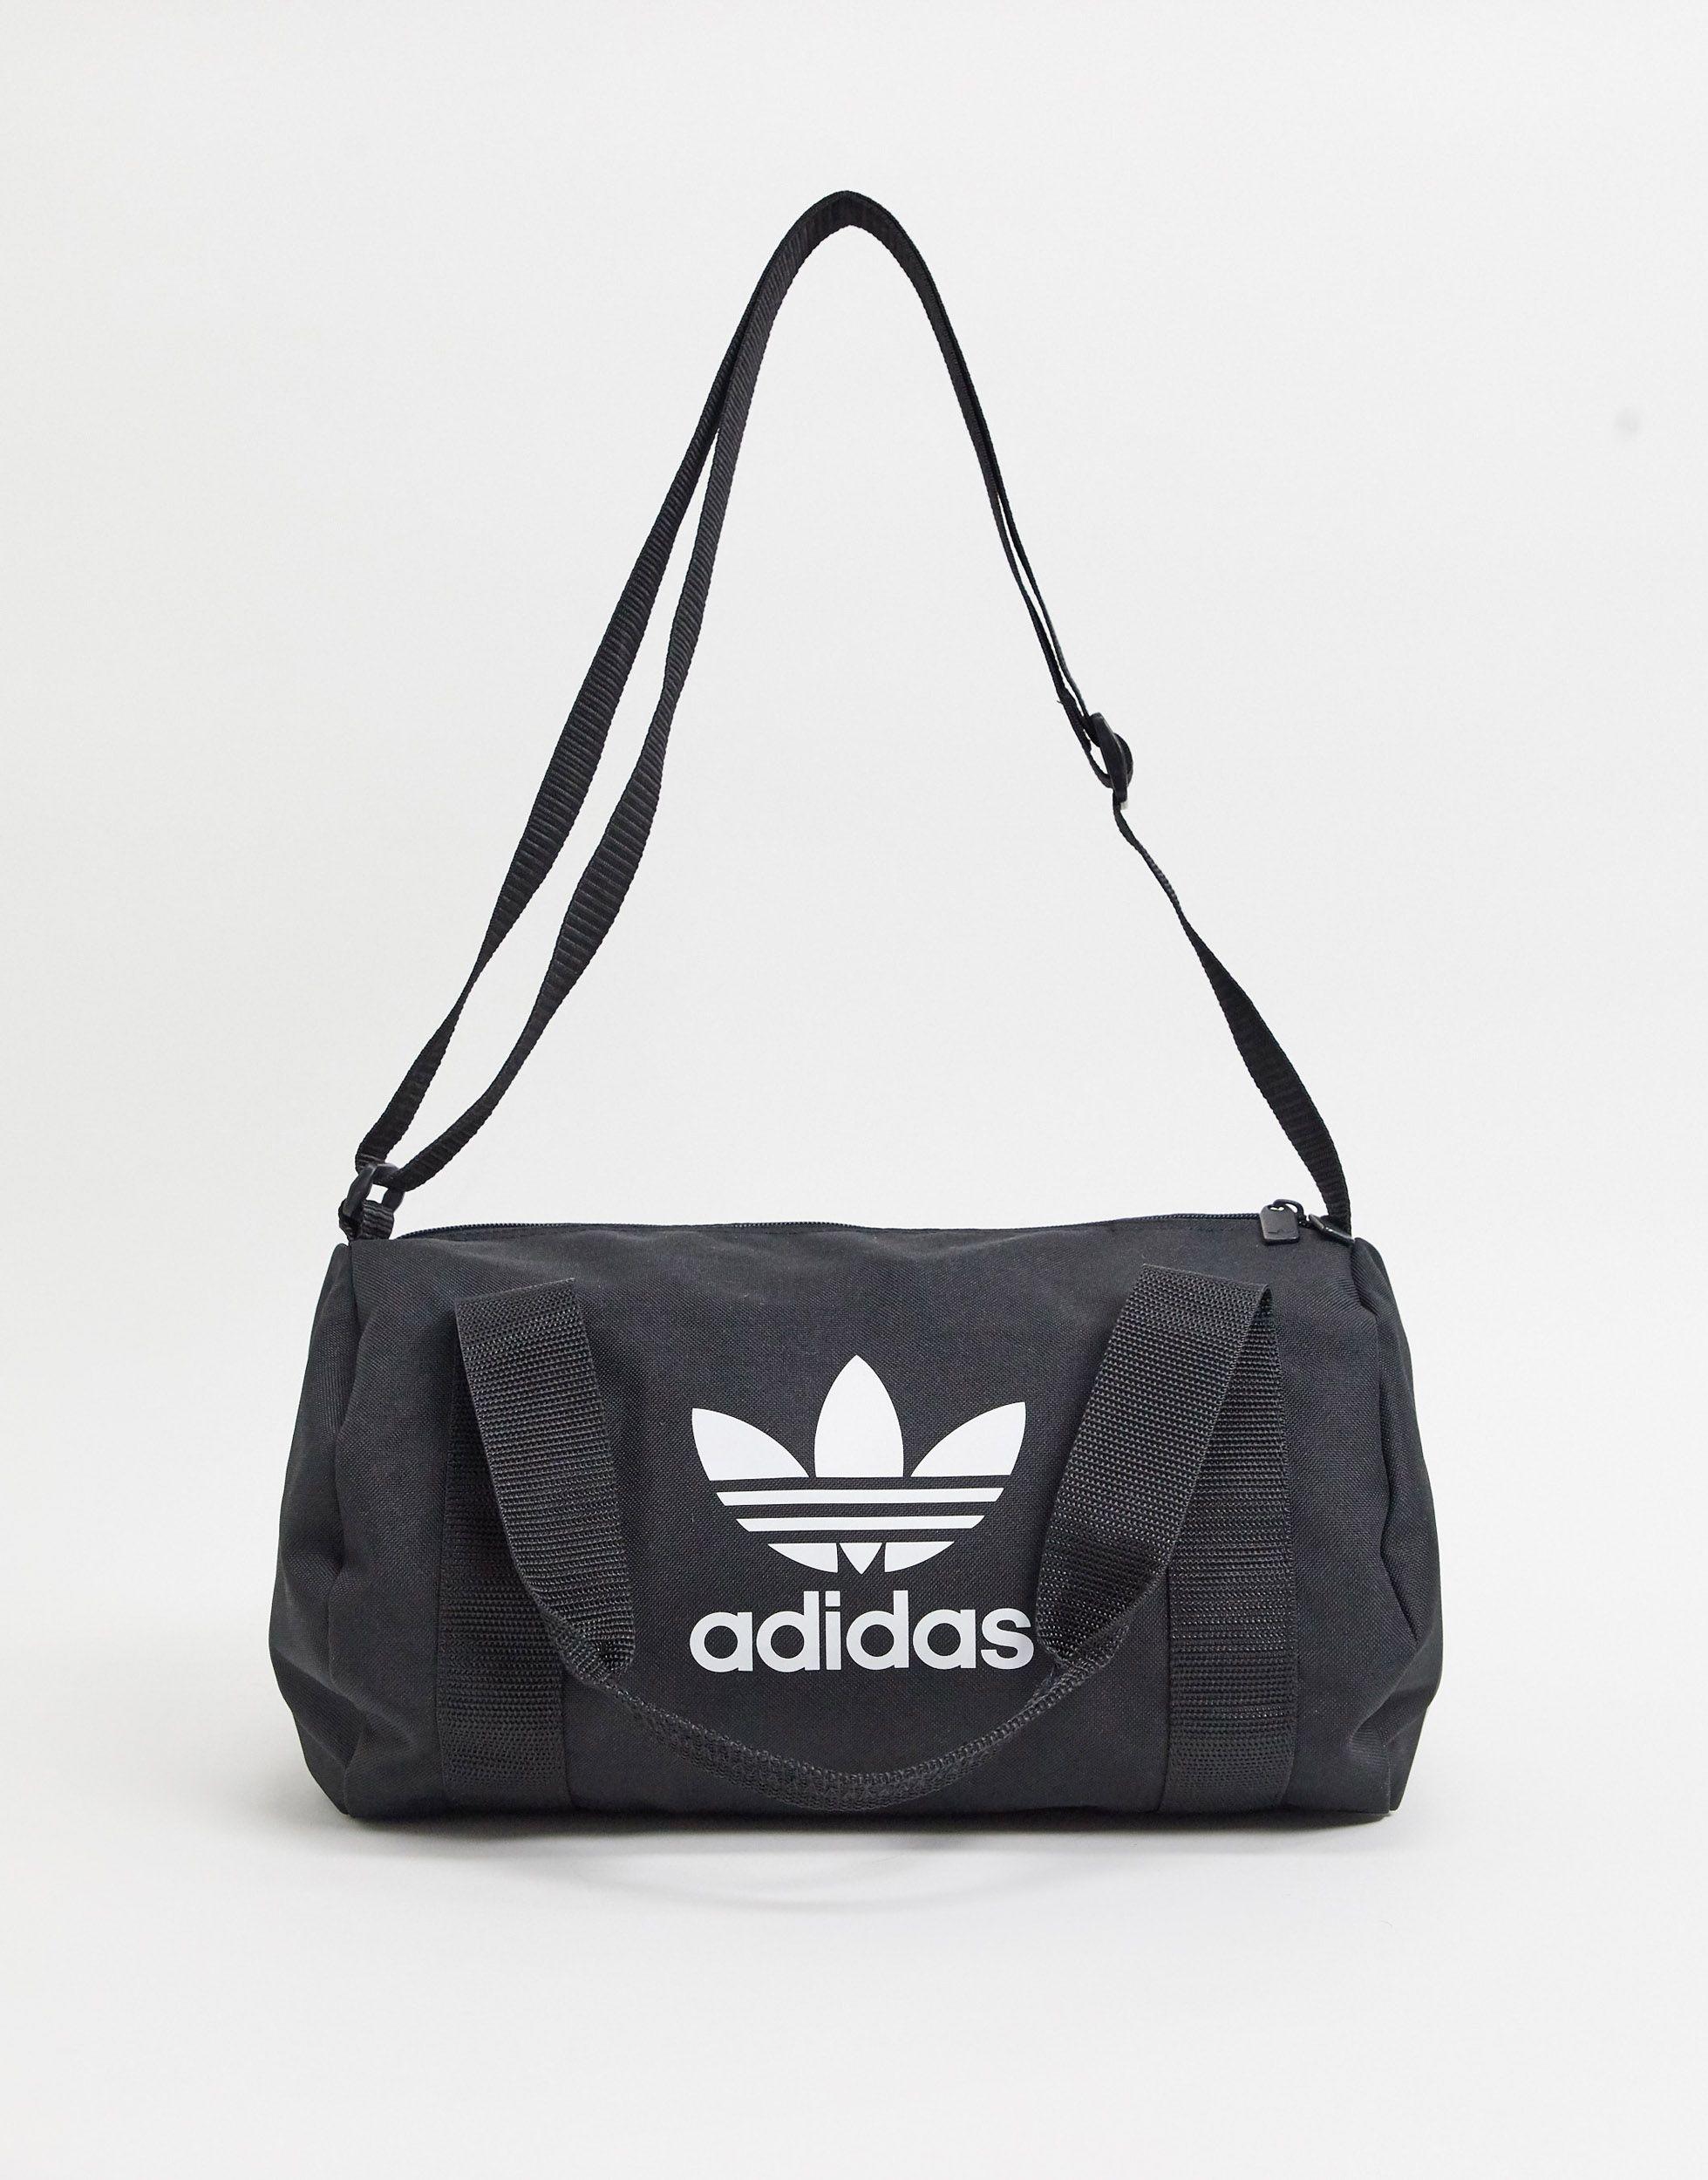 adidas Originals Trefoil Mini Duffle Bag in Black | Lyst Australia